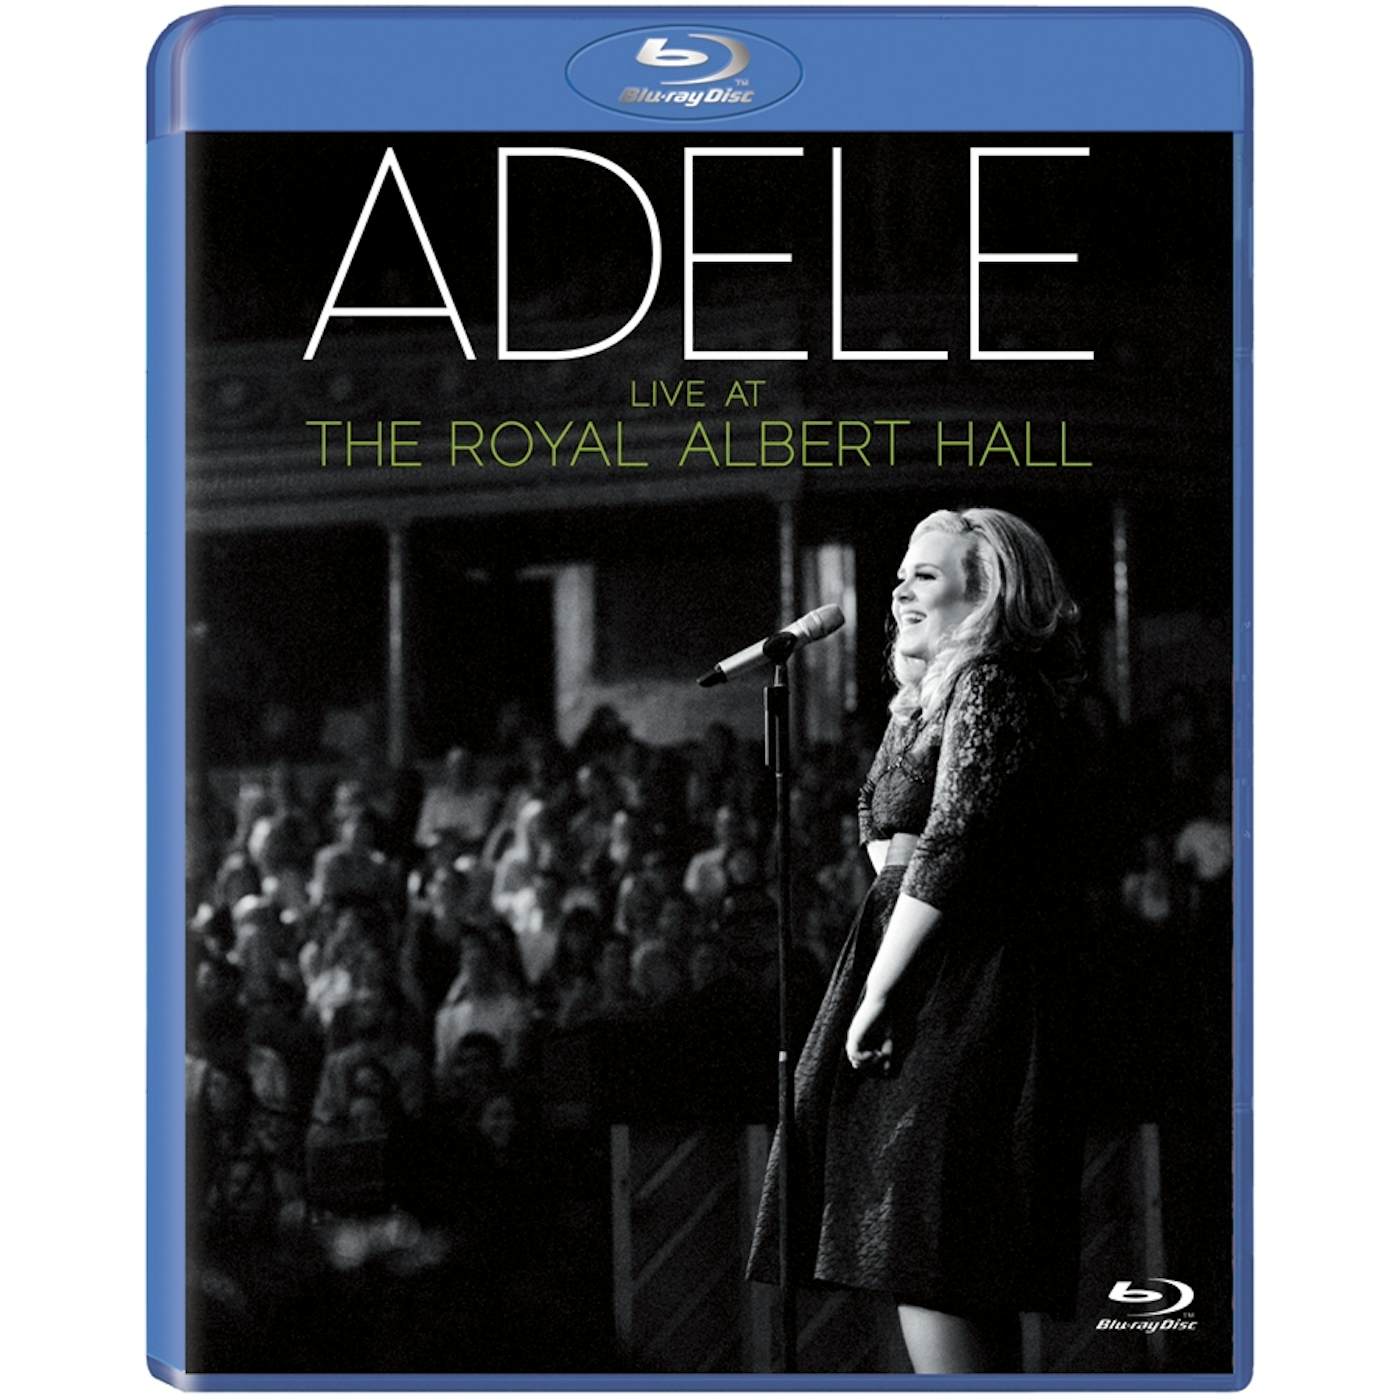 Adele LIVE AT THE ROYAL ALBERT HALL Blu-ray